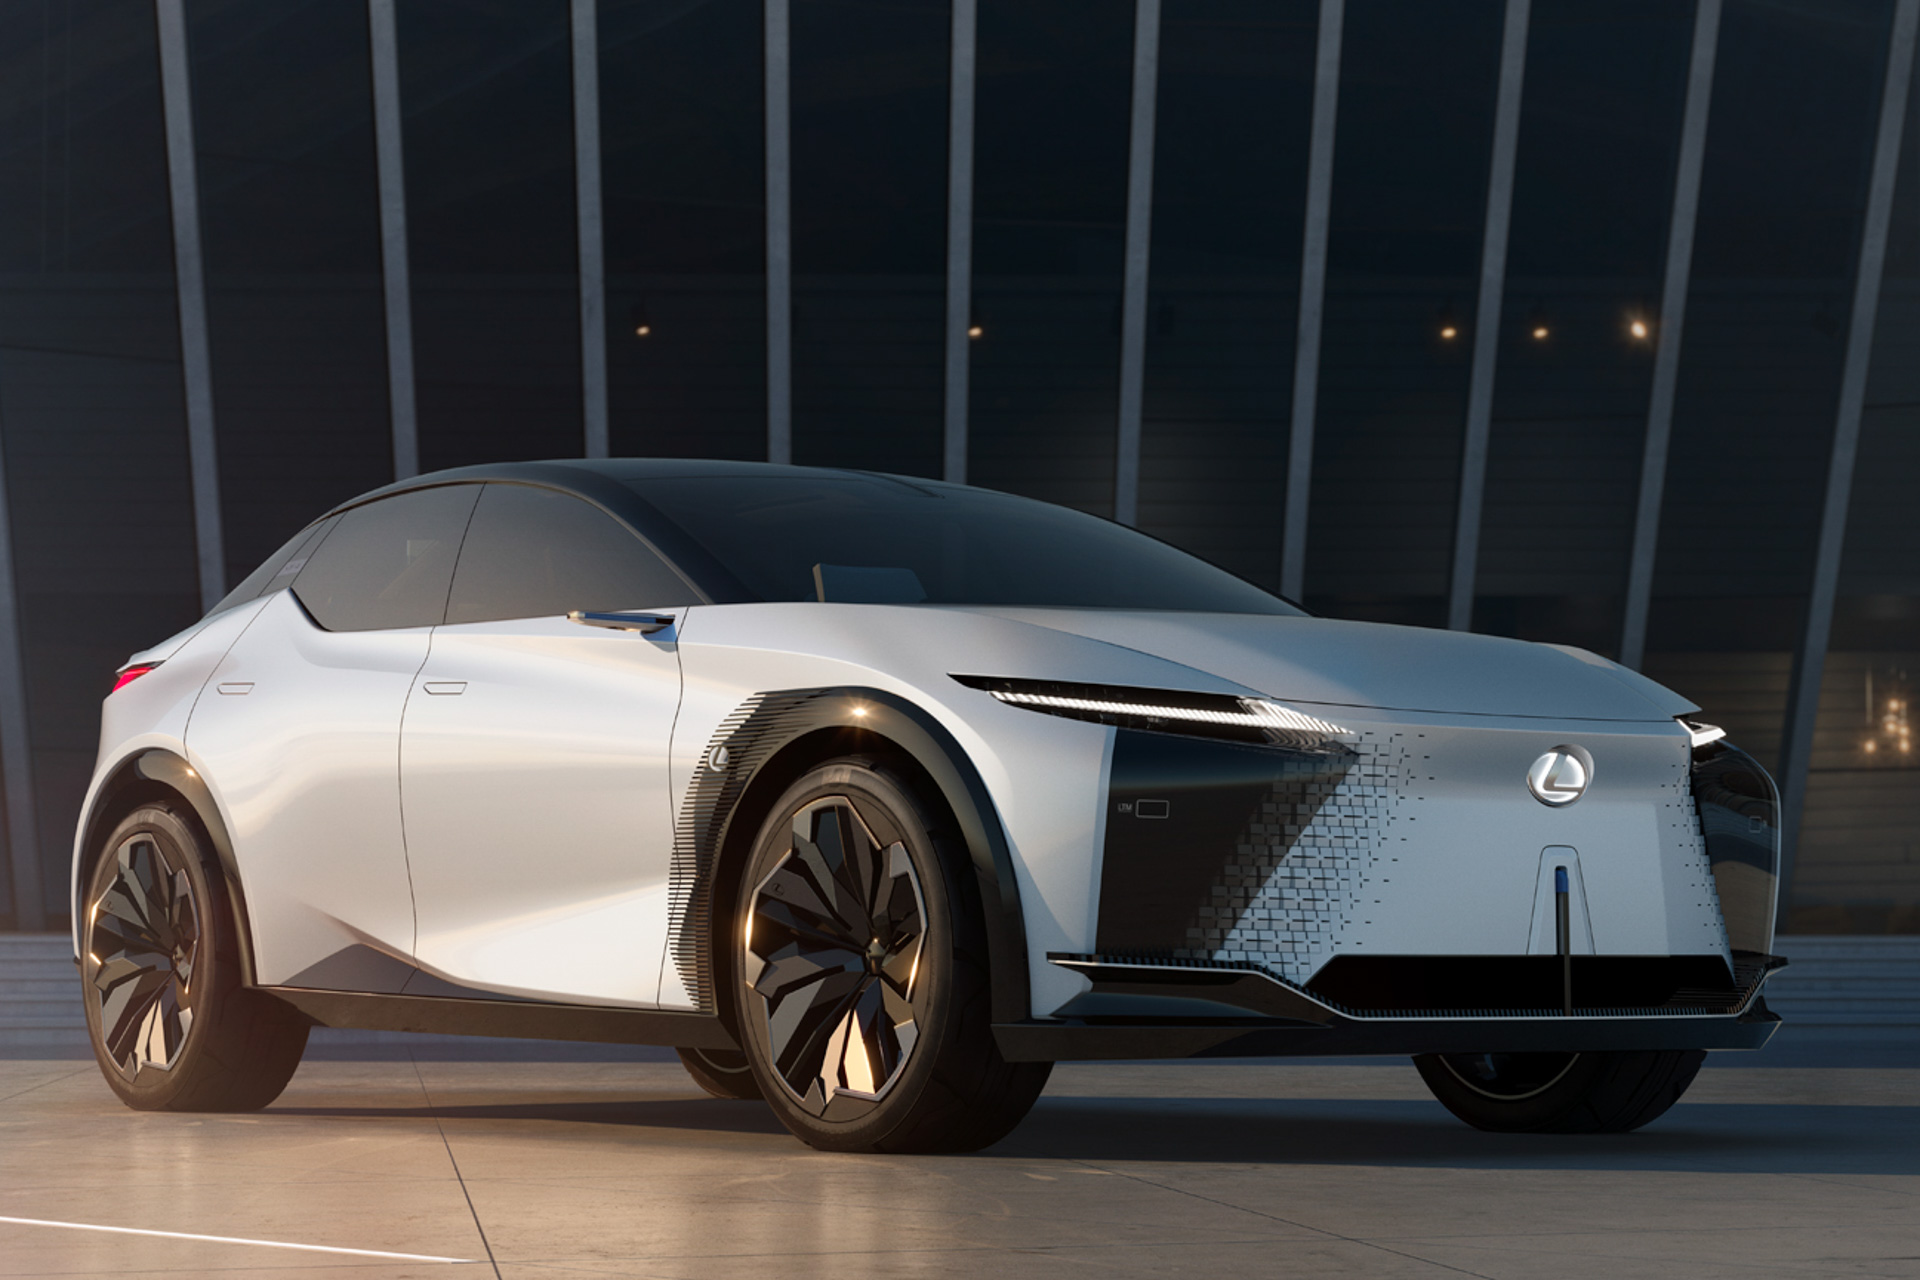 レクサス Evコンセプトカー Lf Z Electrified 世界初公開 21年に2車種の新型モデル発表を予告 Car Watch